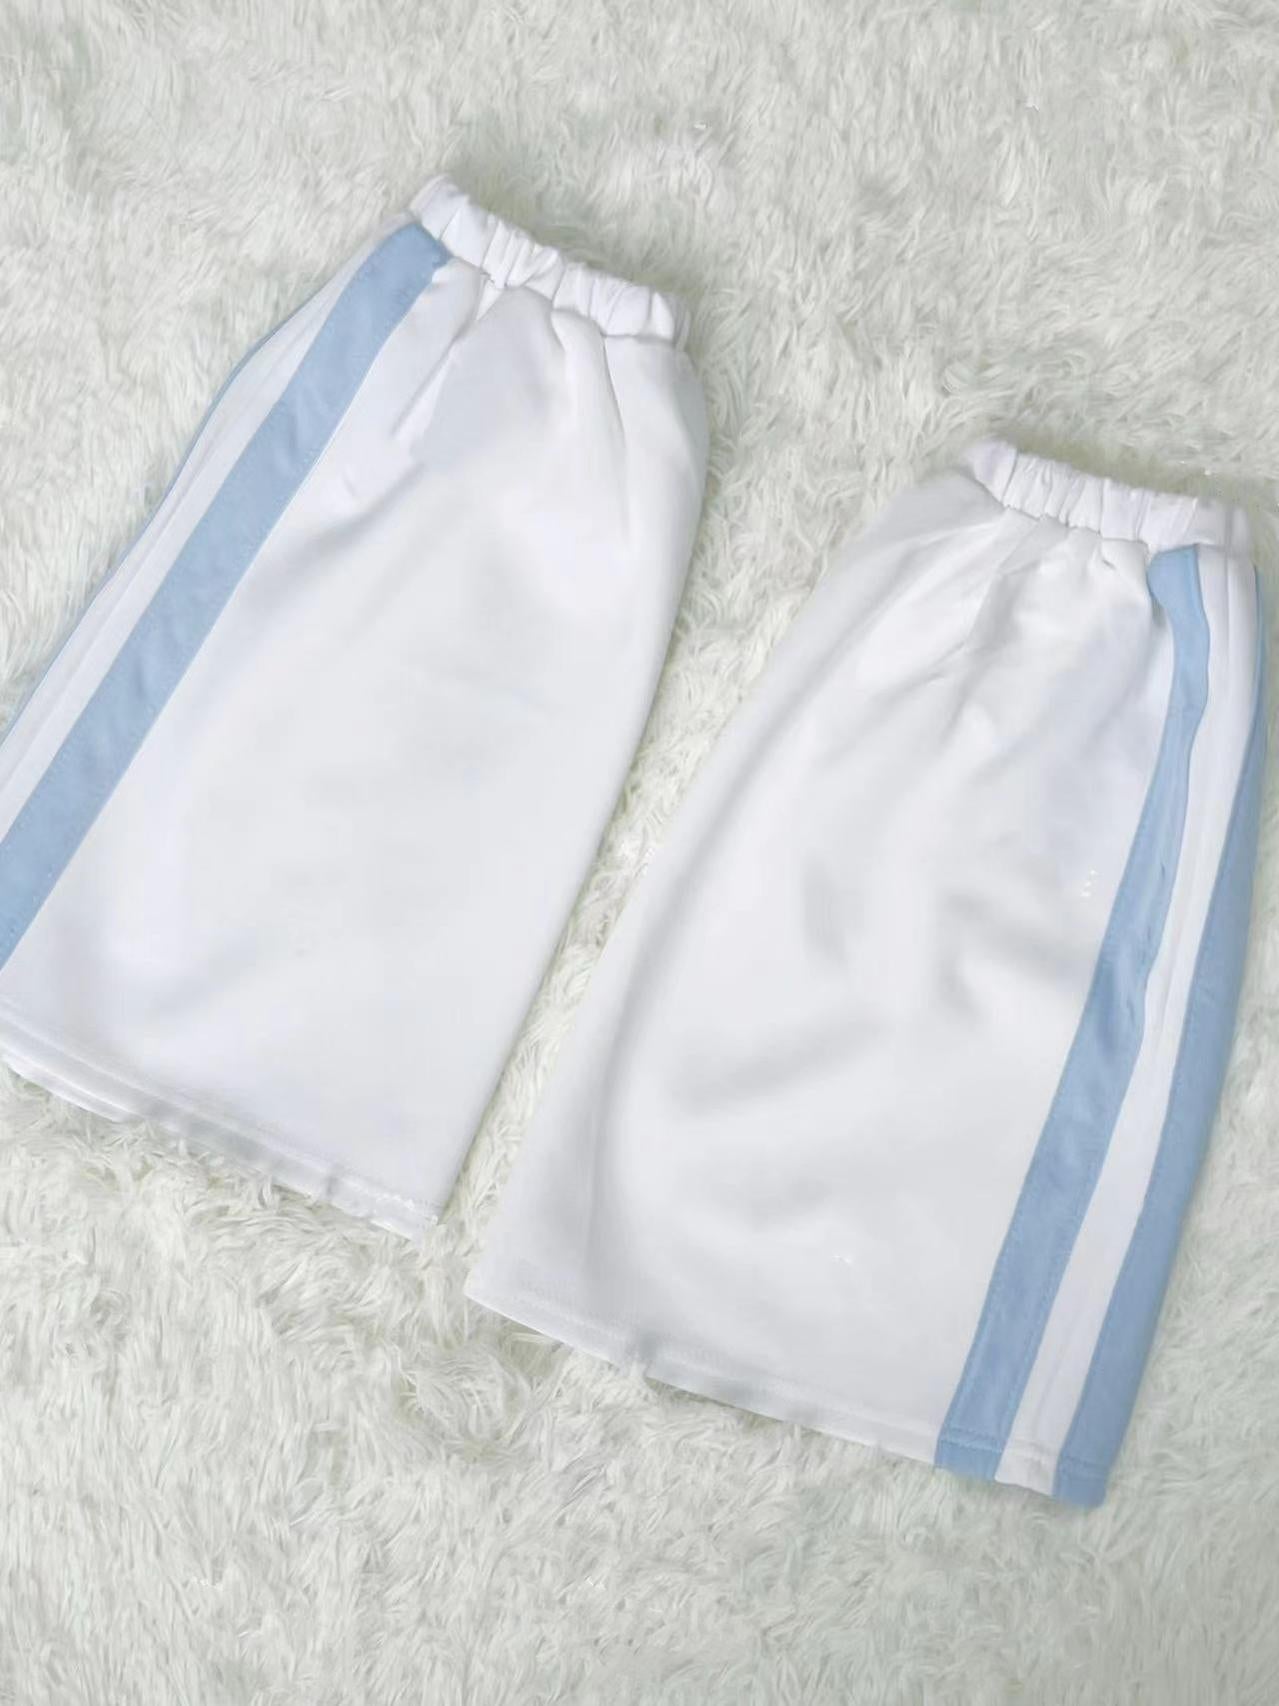 Tenshi Kaiwai Outfit Sets Jacket Shorts And Leg Warmers 37676:565598